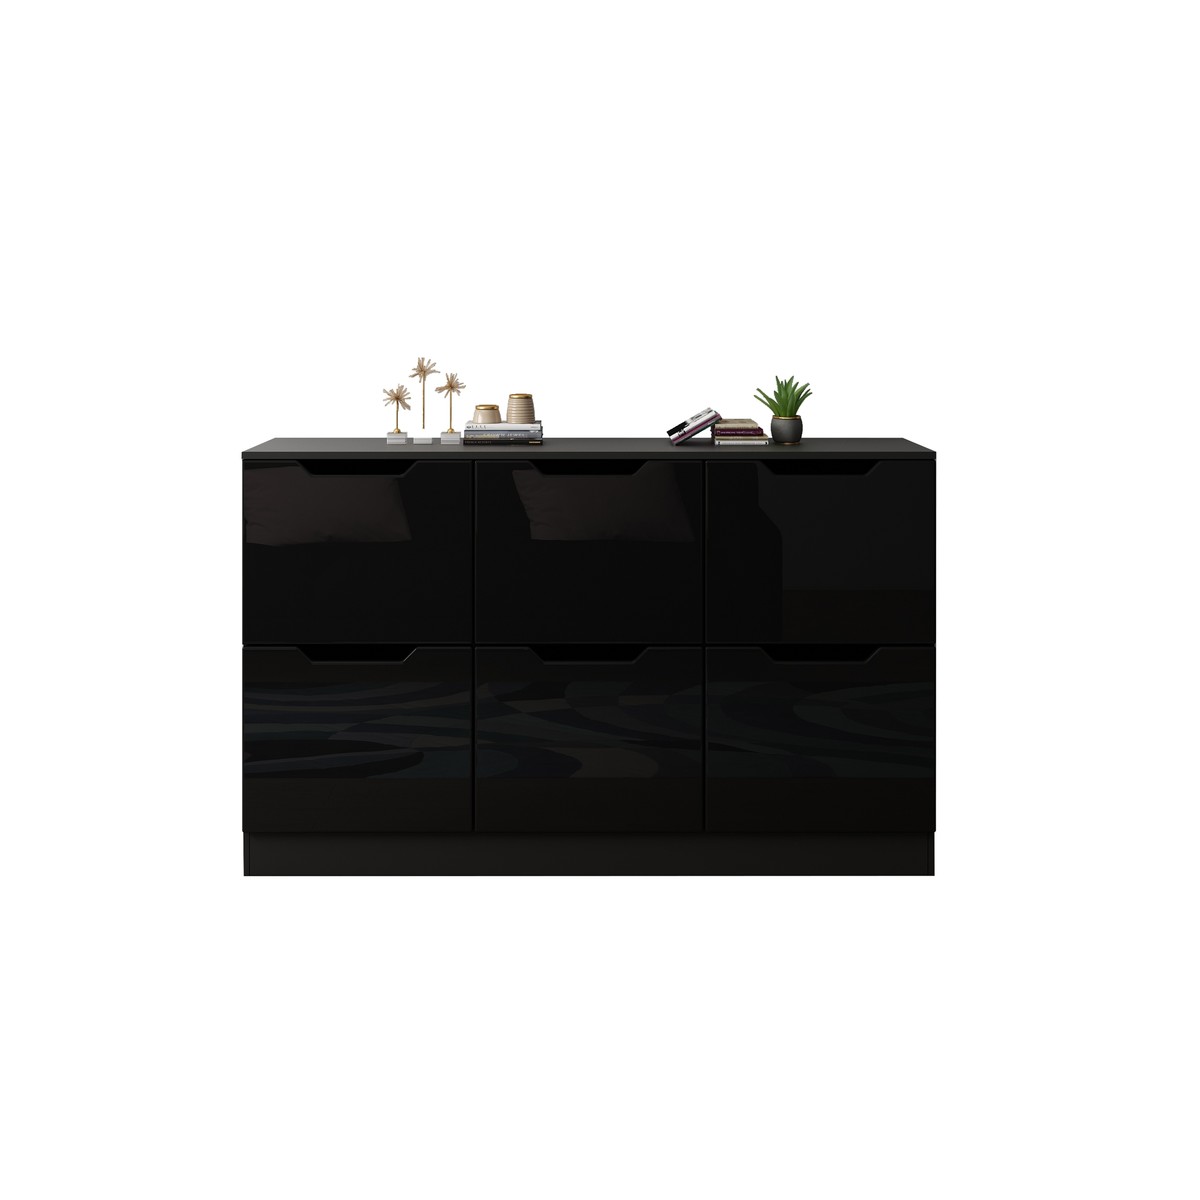 Six-Drawer Modern High-Gloss Wooden Chest Cabinet